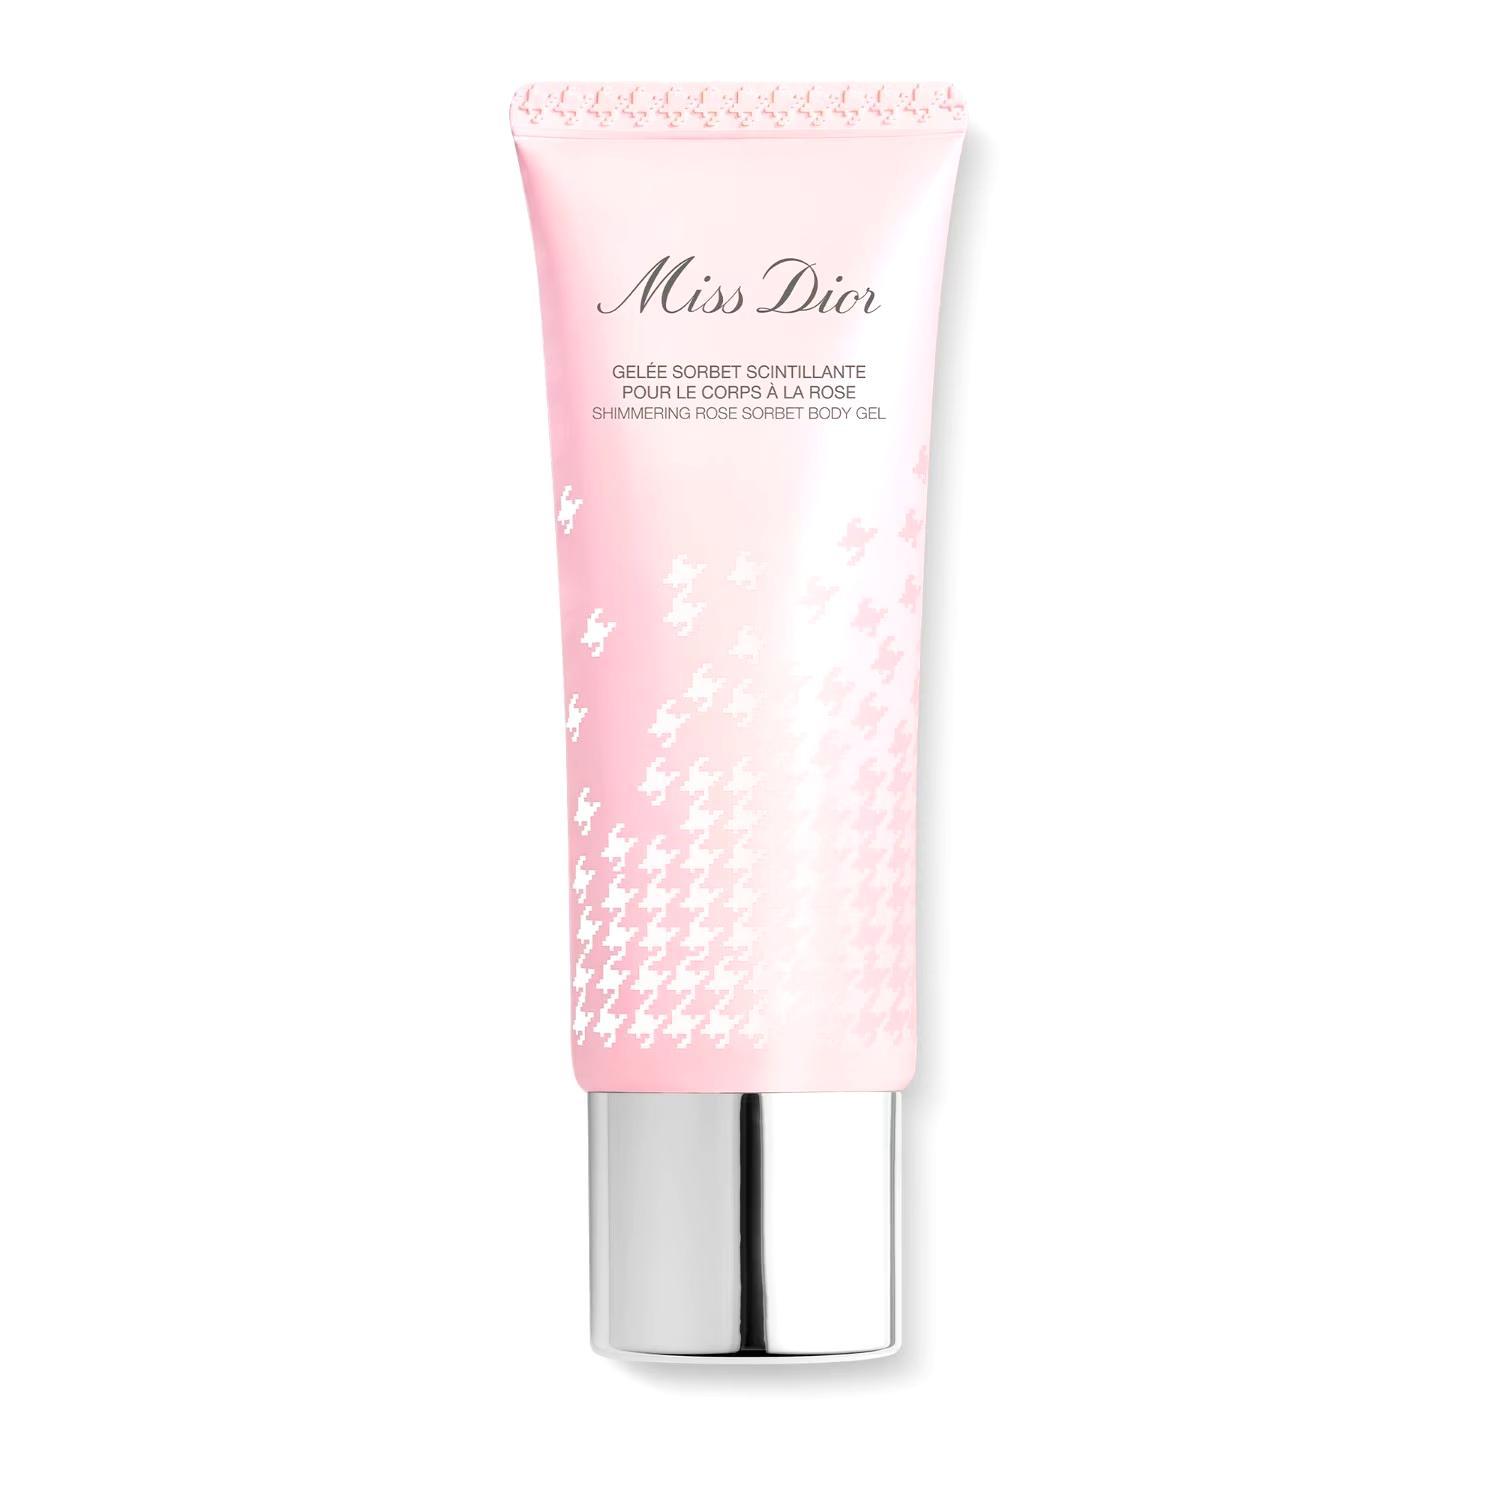 Miss Dior Shimmering Rose Sorbet body gel shimmering gel for the body